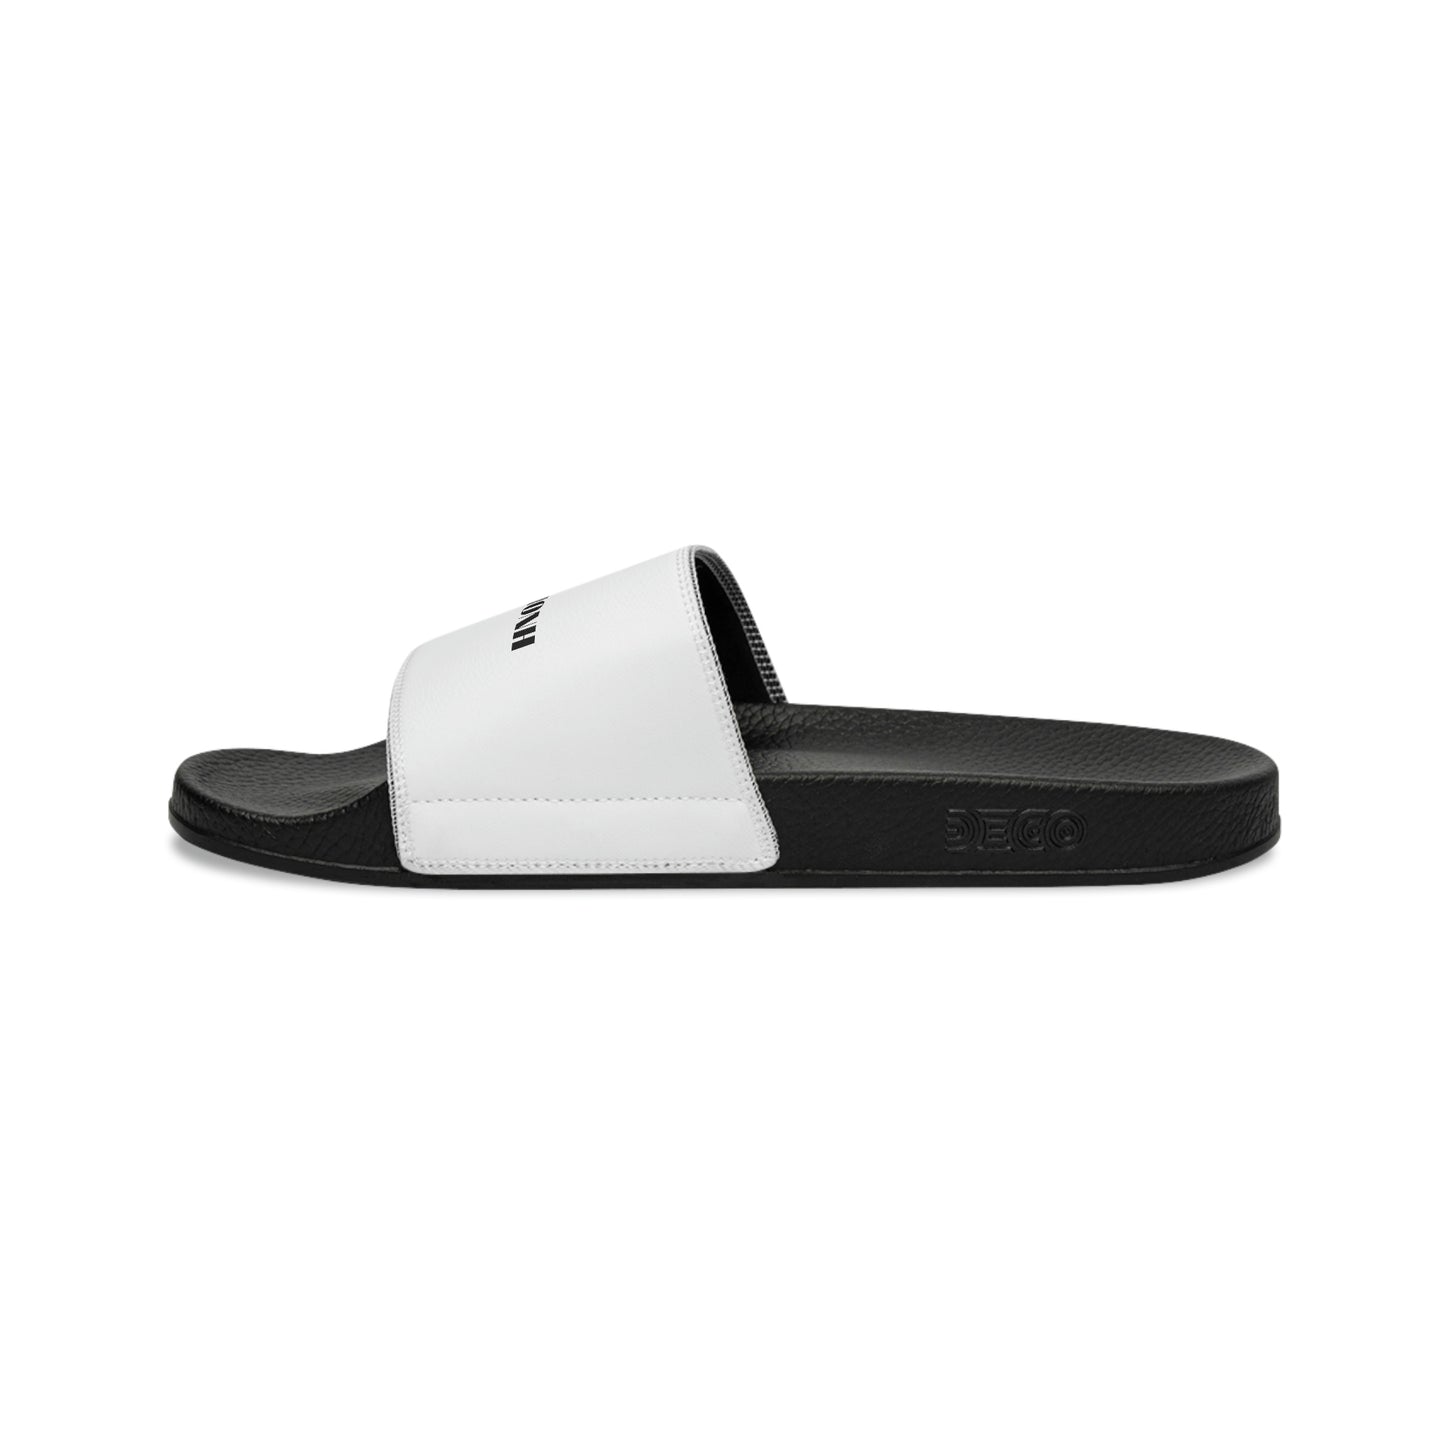 GRUMONH - Women's Slide Sandals